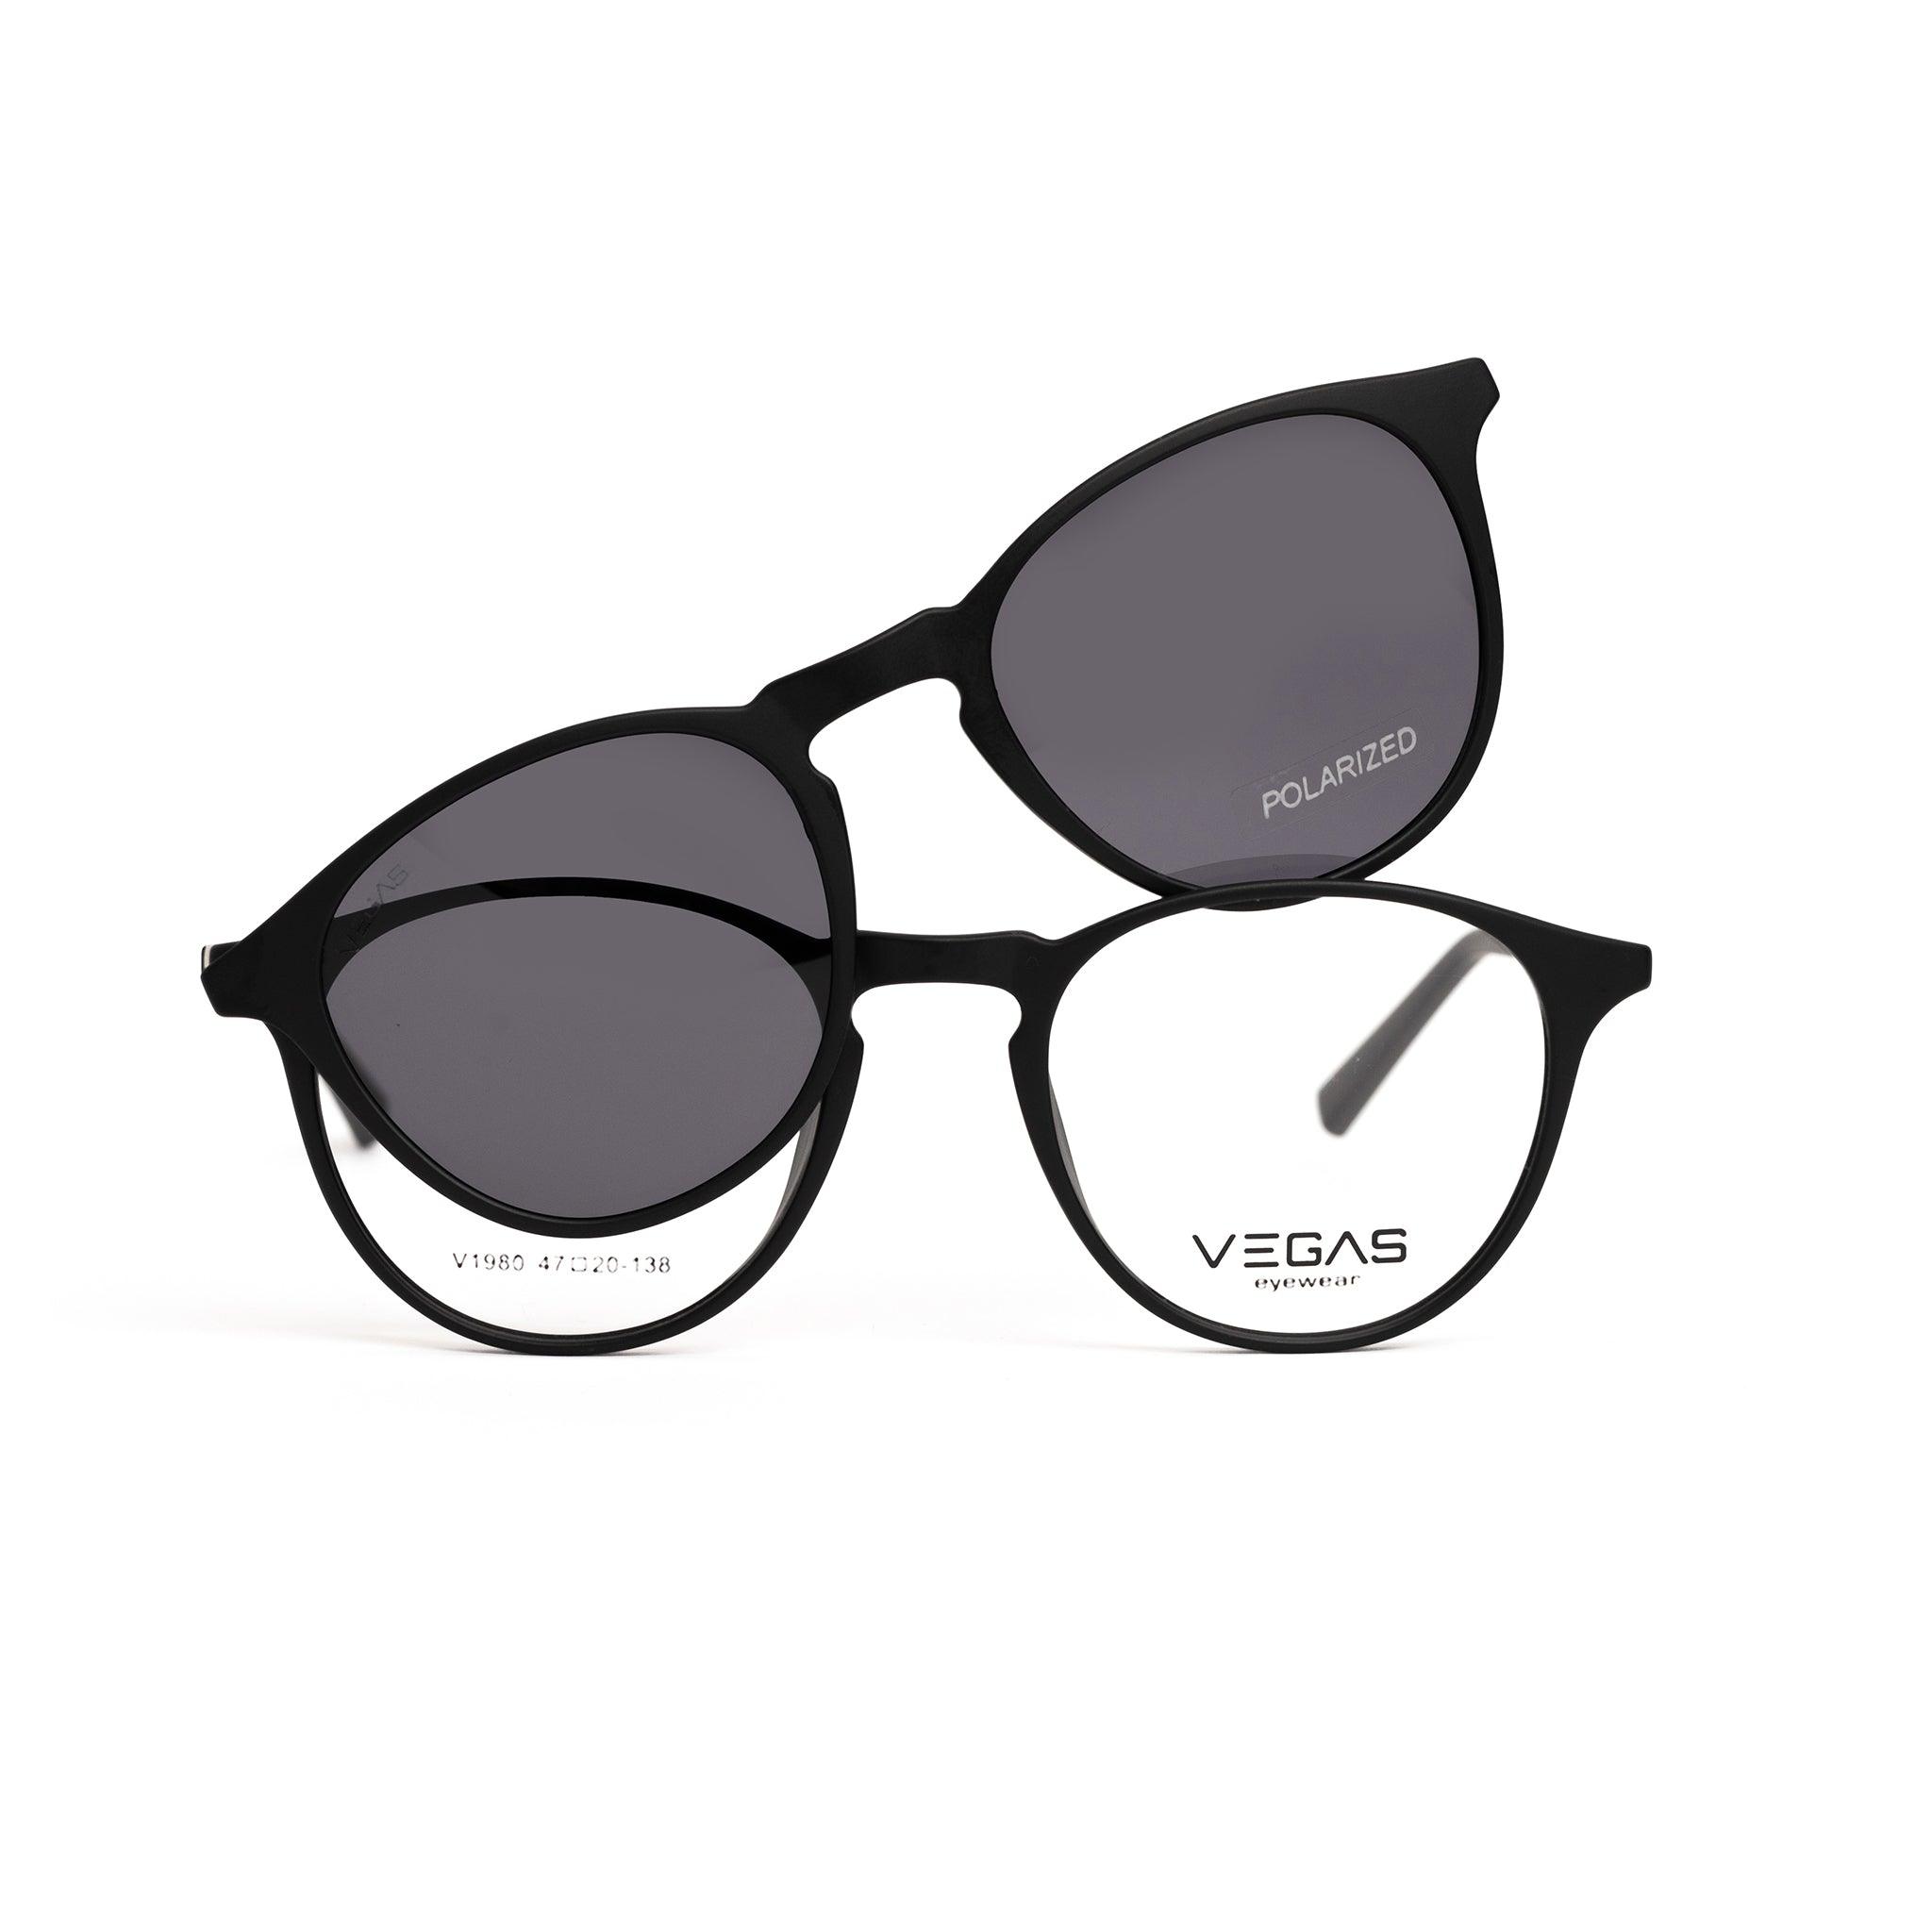 VEGAS V1980 - COC Eyewear